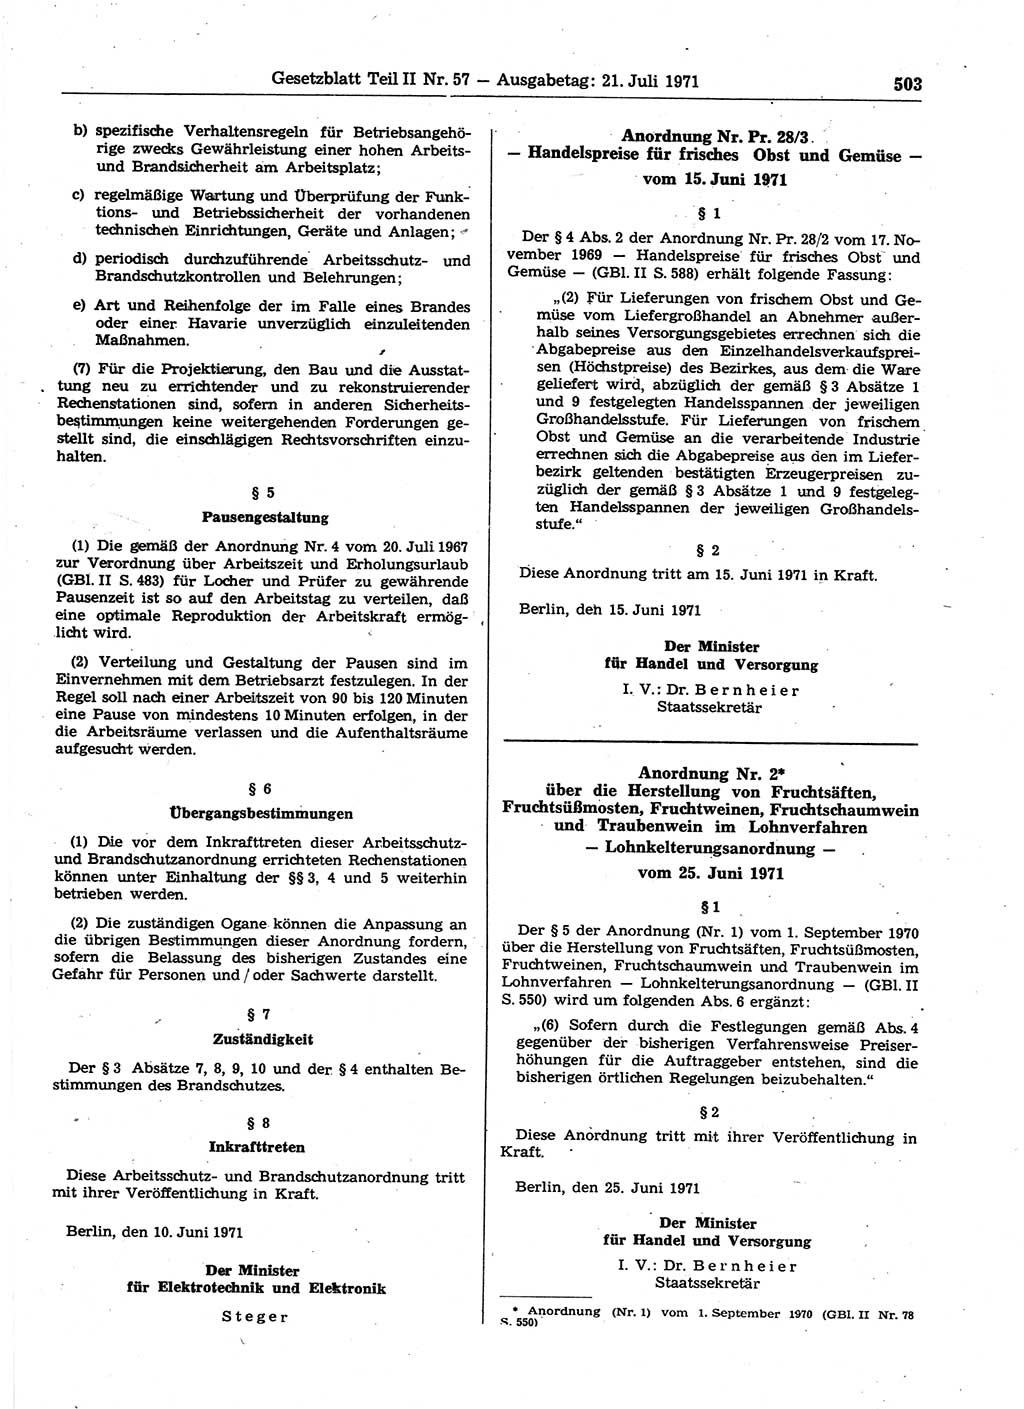 Gesetzblatt (GBl.) der Deutschen Demokratischen Republik (DDR) Teil ⅠⅠ 1971, Seite 503 (GBl. DDR ⅠⅠ 1971, S. 503)